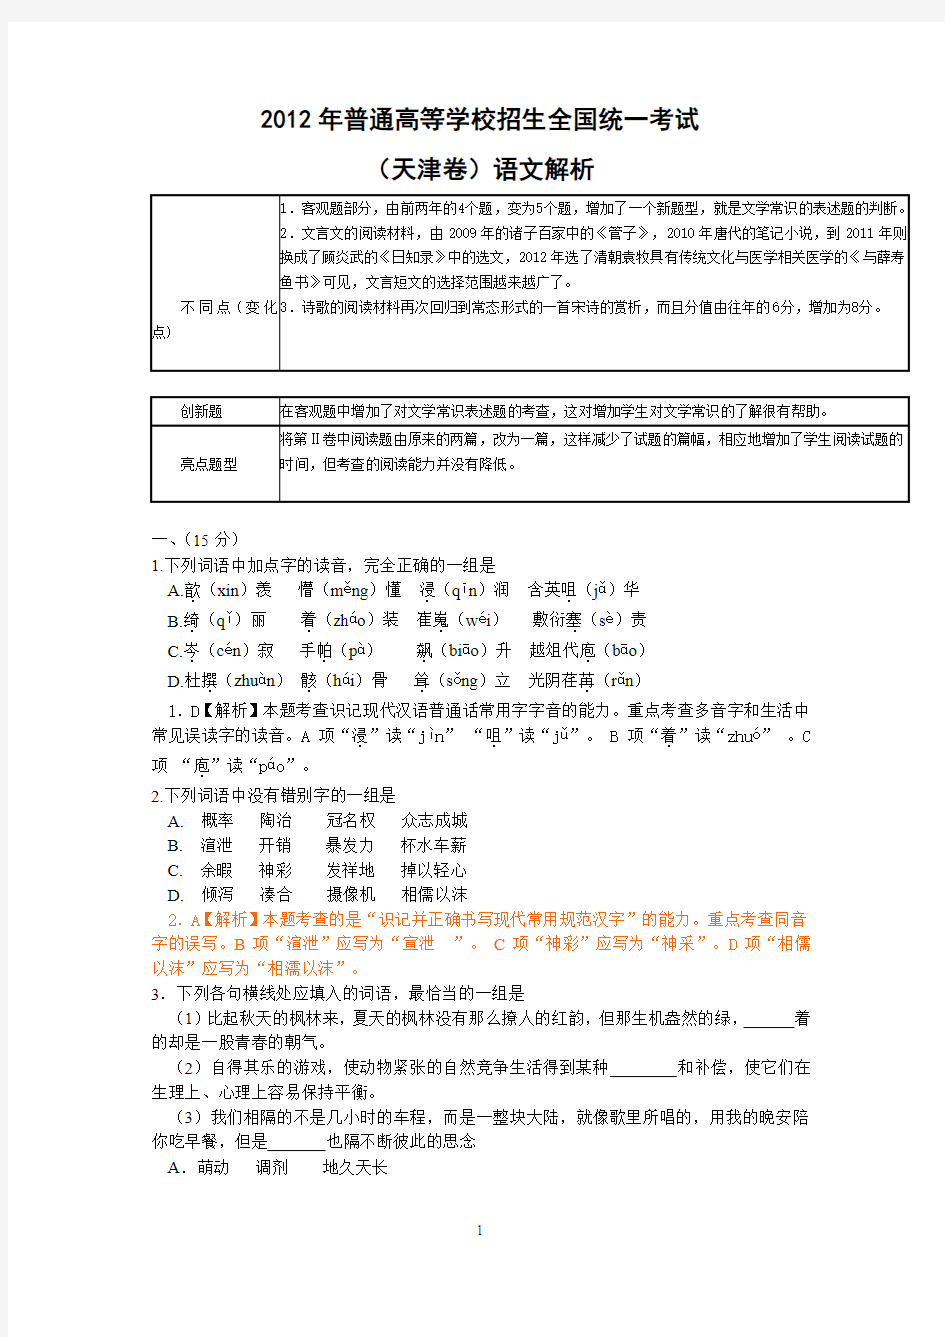 【语文】2012年高考真题——(天津卷)解析版